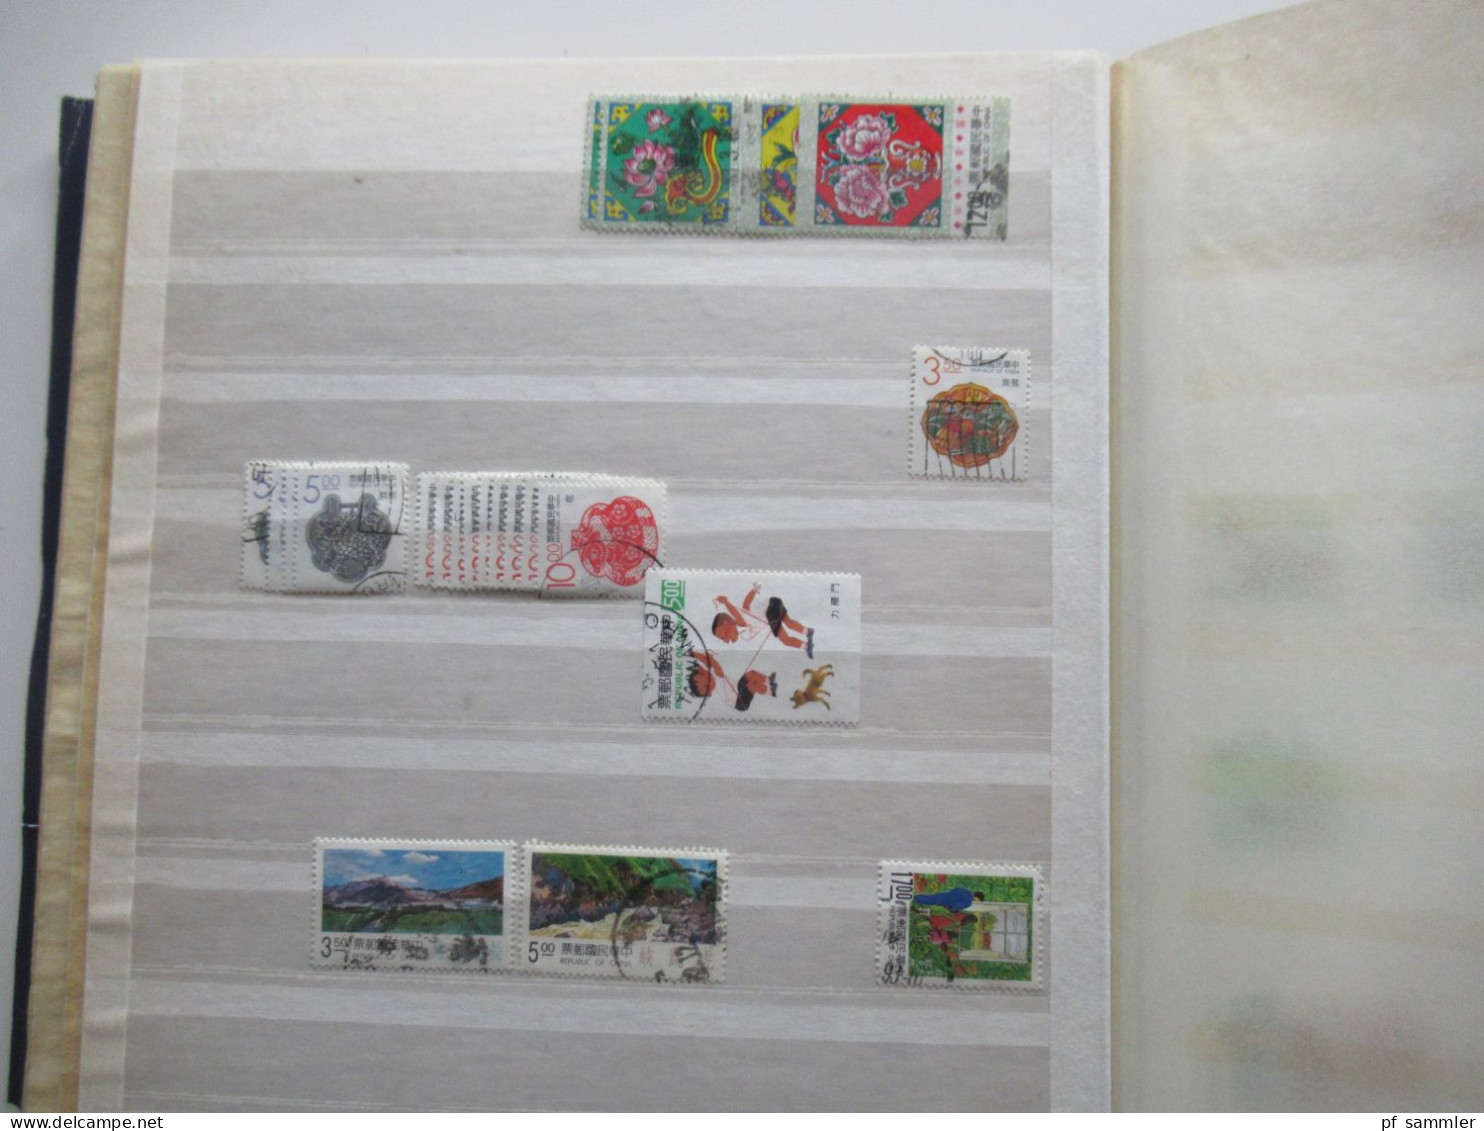 Sammlung / 2 Lagerbücher Asien Republik China / Taiwan ab ca. 1952 - ca. 2006 viele gestempelte Marken / Fundgrube!?